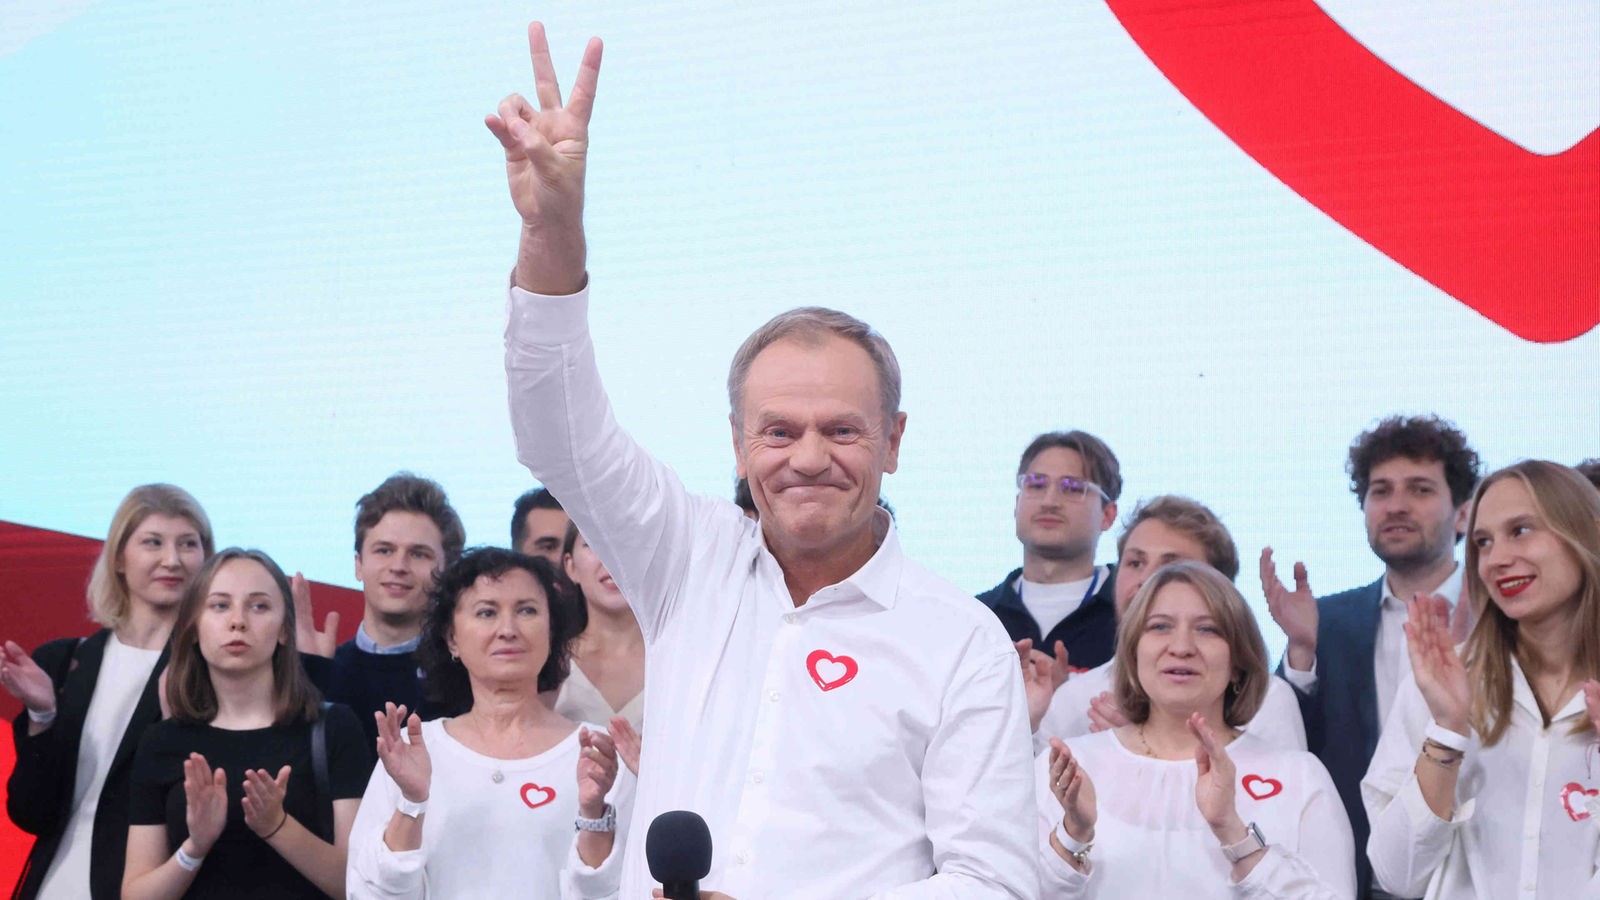 Polska głosowała: co oznaczałby dla nas bardziej liberalny rząd?  – Aktualności – WDR – Aktualności